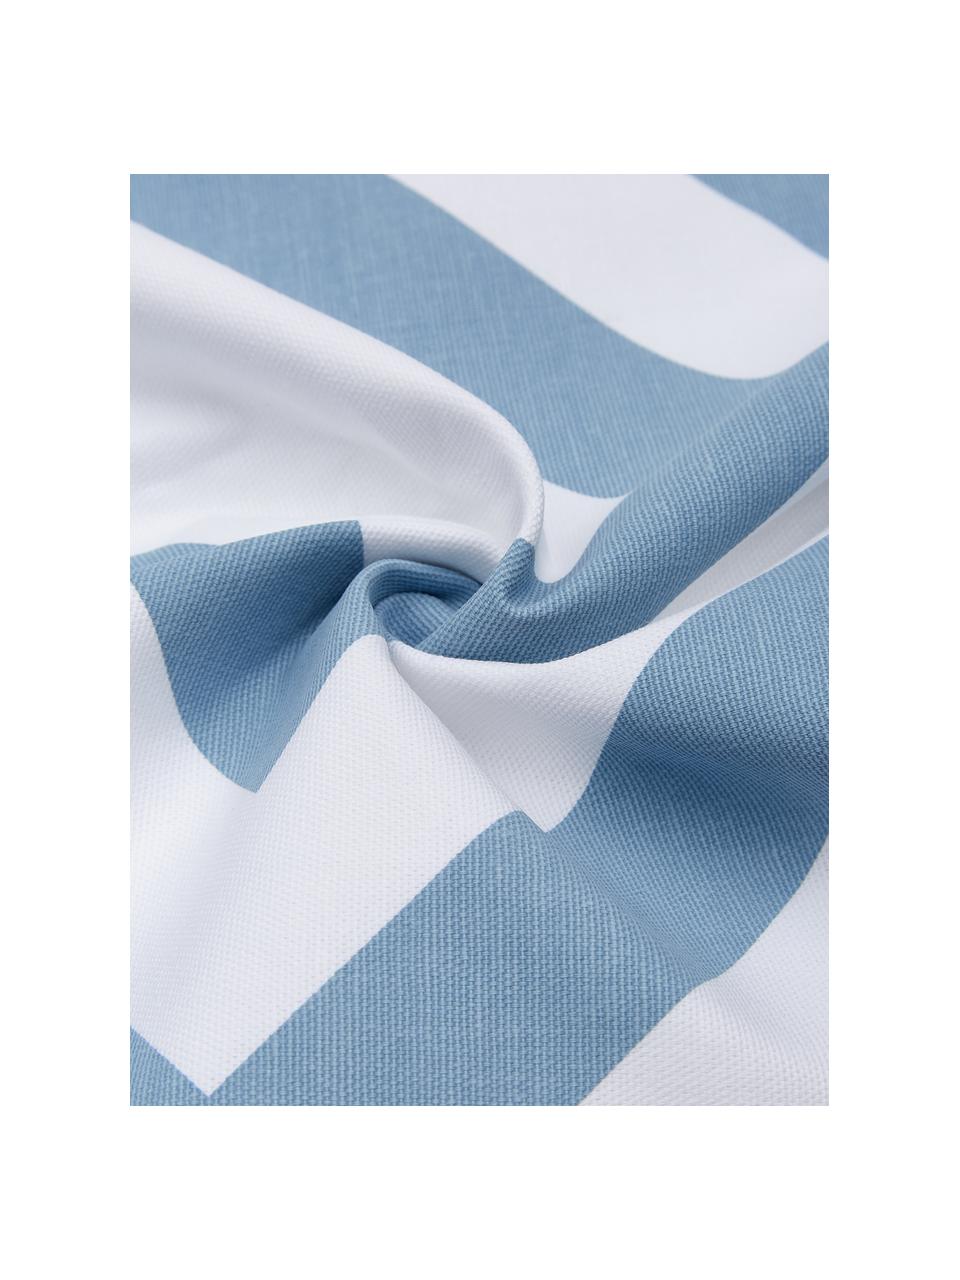 Kussenhoes Sera in lichtblauw/wit met grafisch patroon, 100% katoen, Wit, lichtblauw, 45 x 45 cm